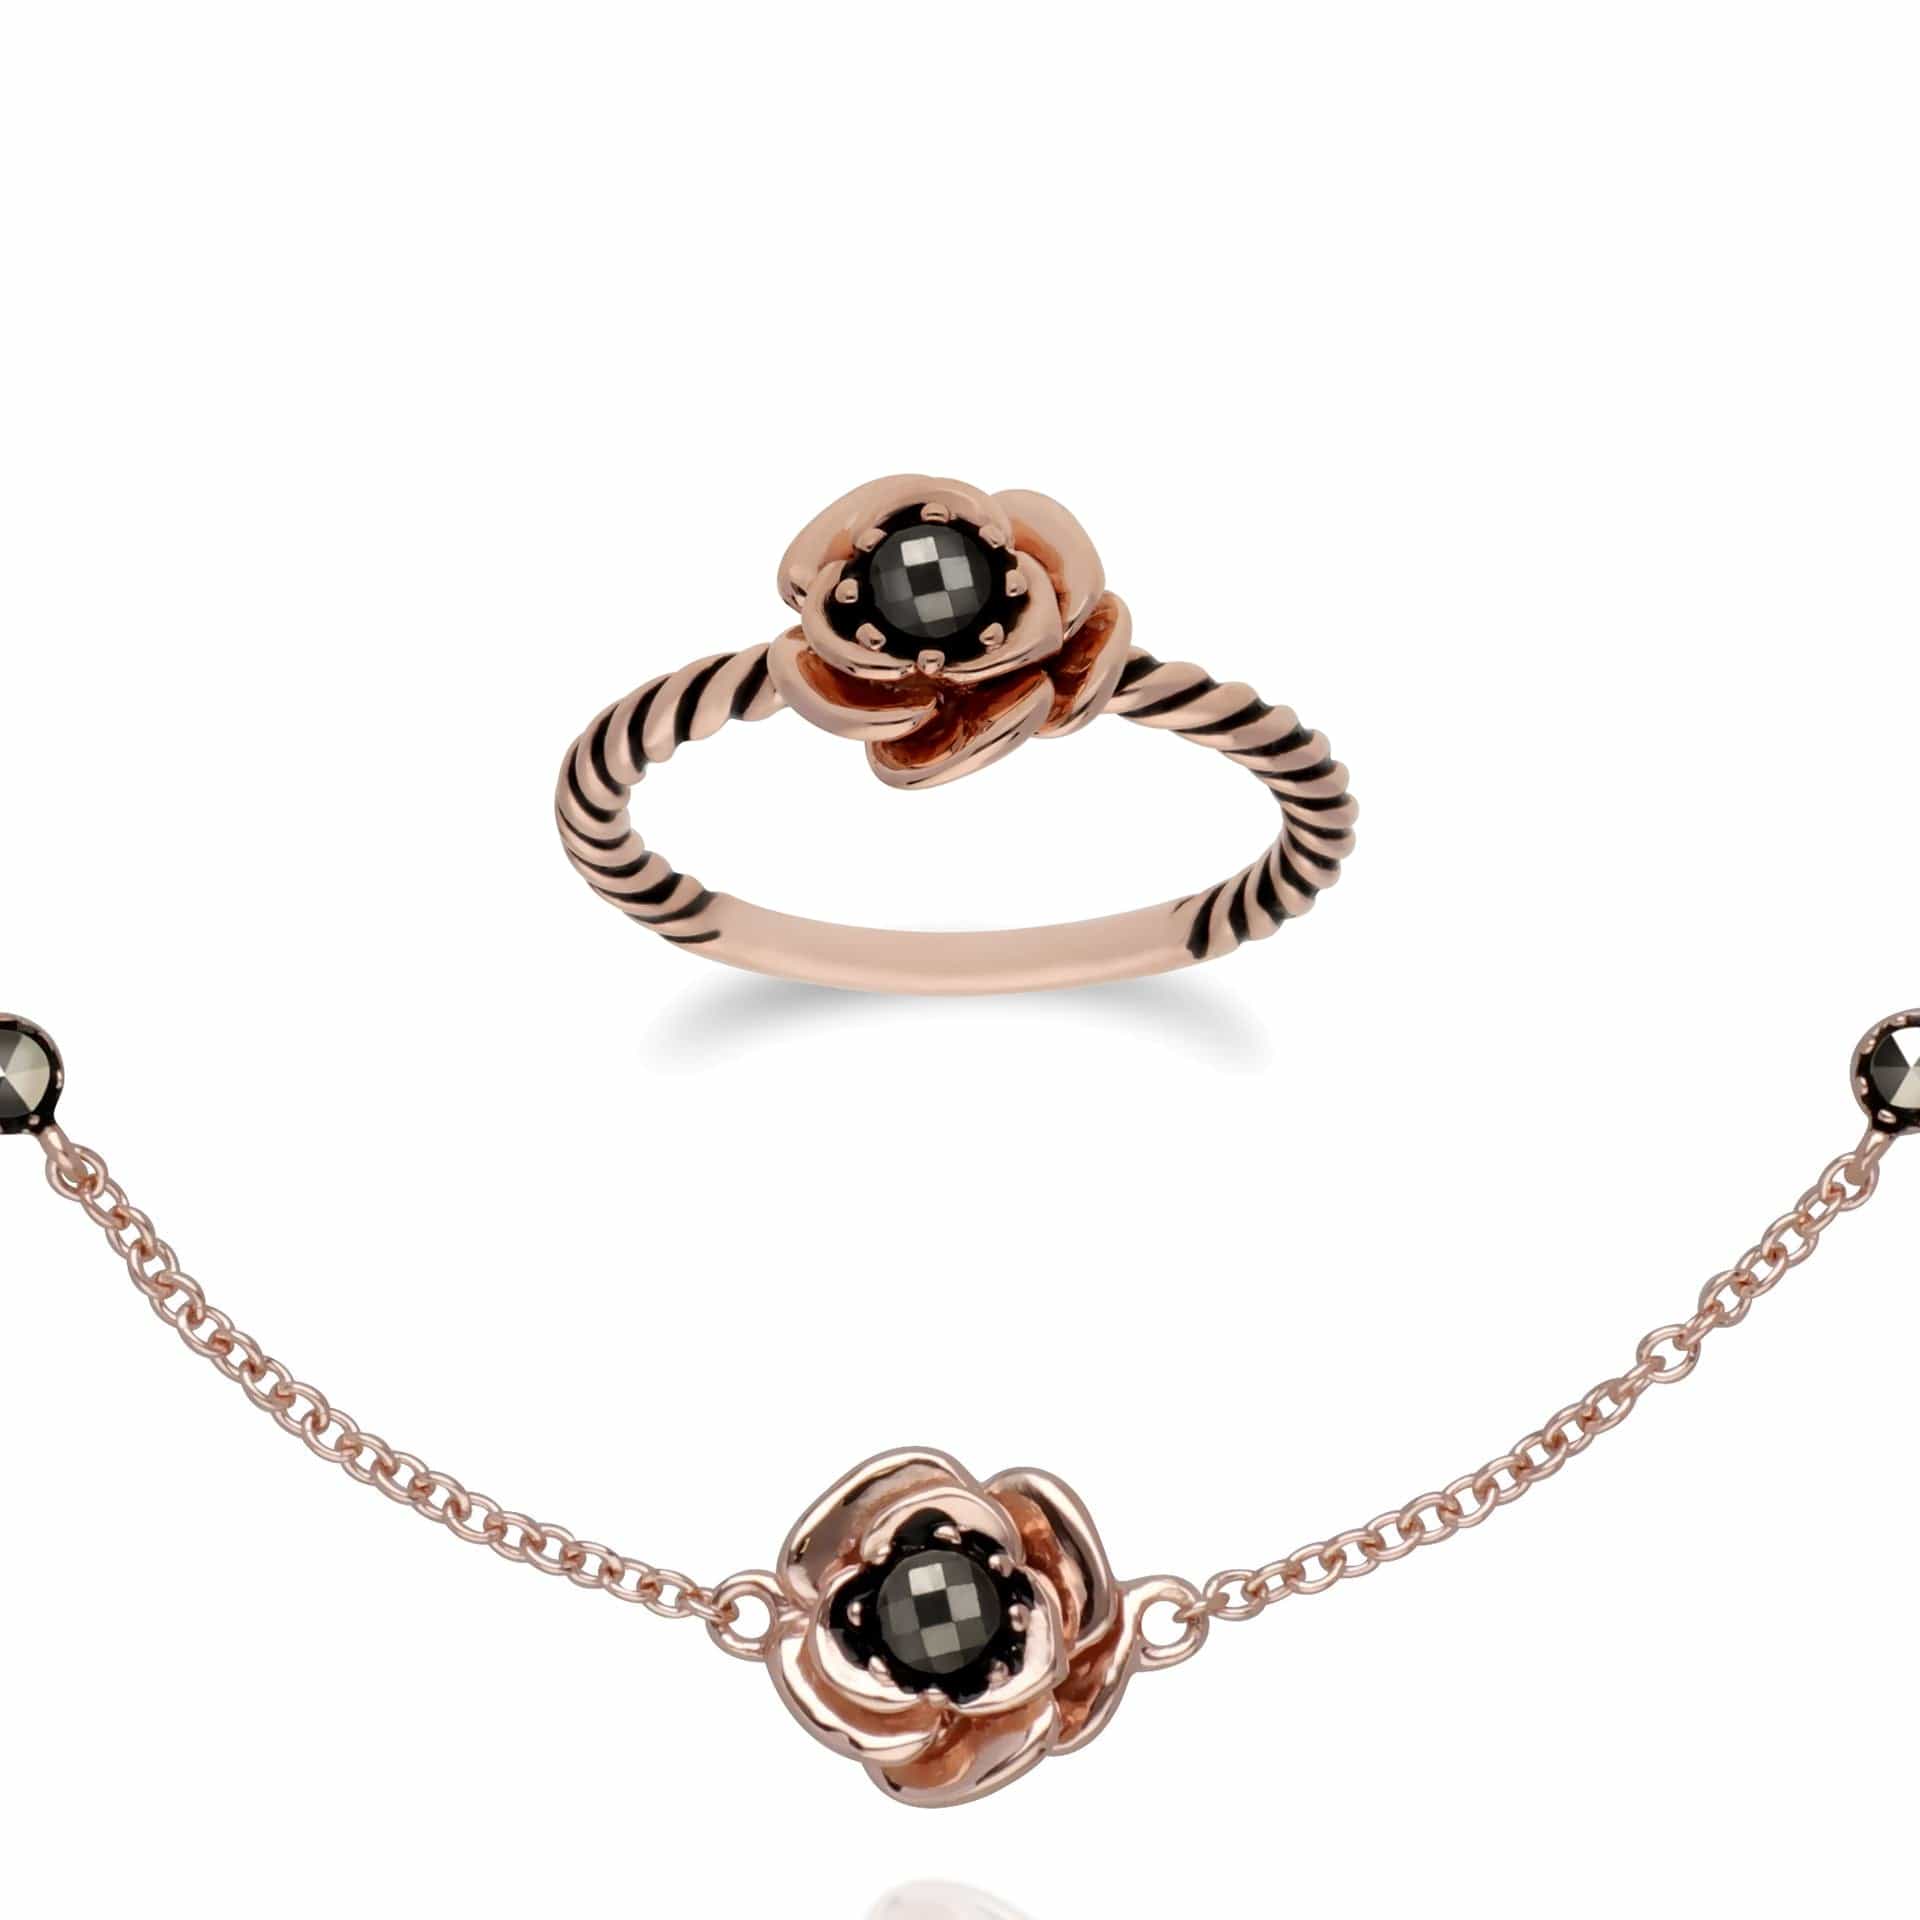 224L007501925-224R030401925 Rose Gold Plated Marcasite Flower Ring & Bracelet Set in 925 Sterling Silver 1